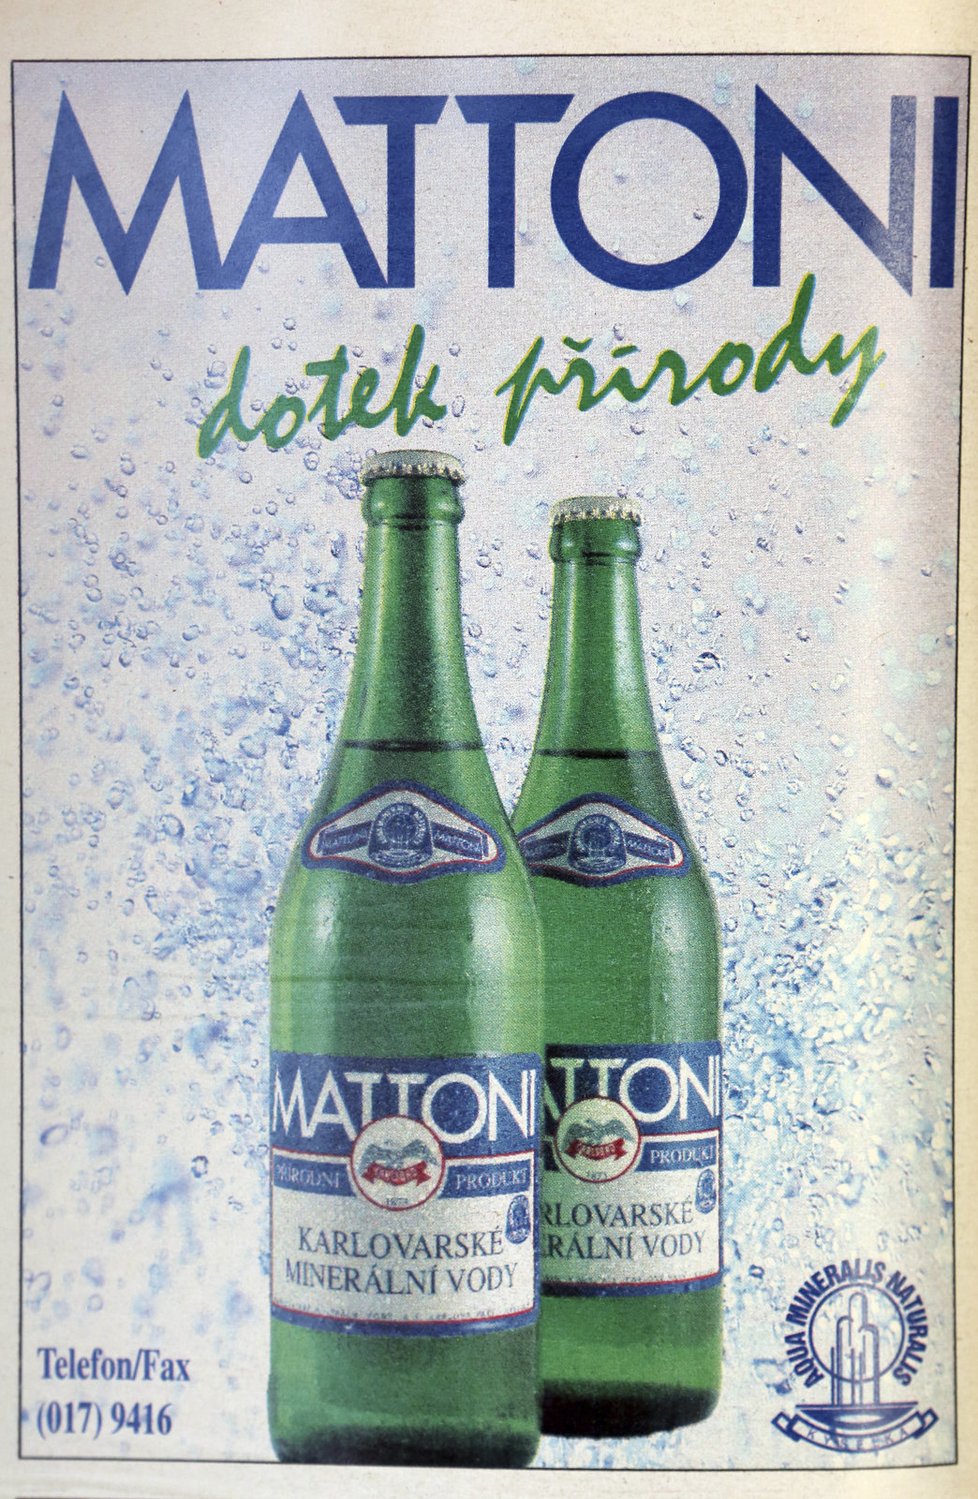 Reklama na Mattoni se během více jak 20 let příliš nezměnila. I tvar lahve zůstává stále stejný. Klasika a tradice je prostě klasika a tradice.